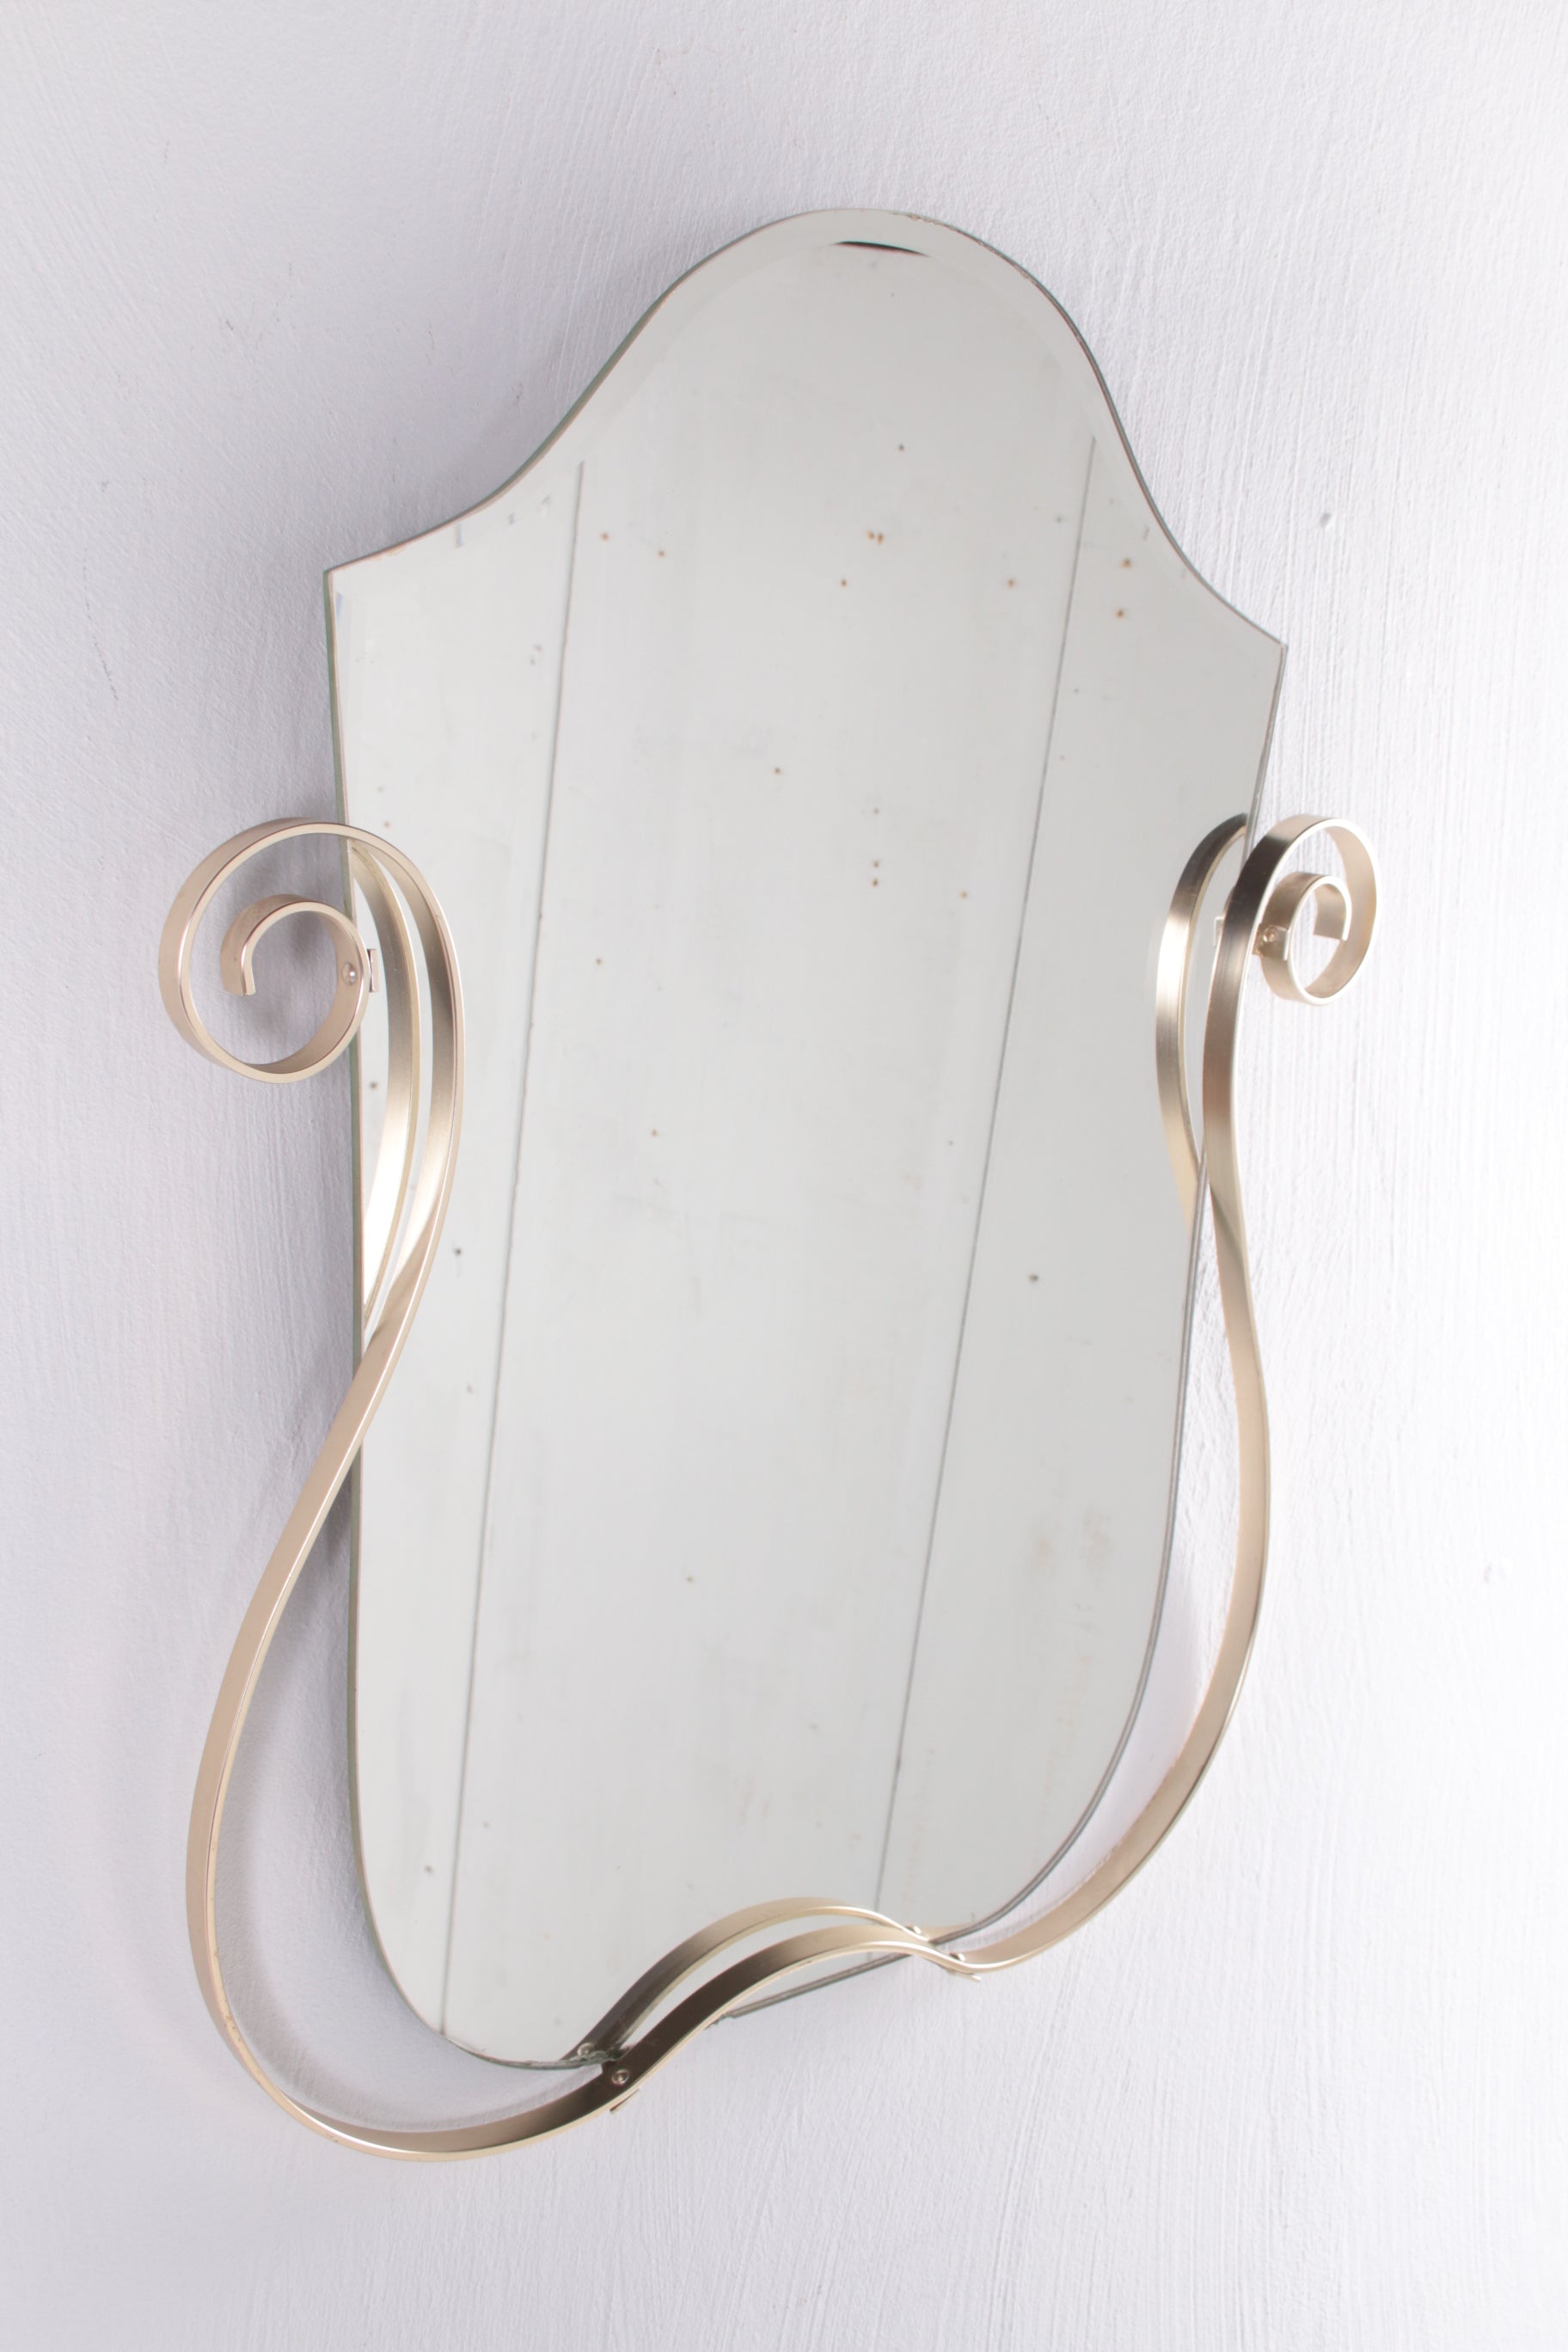 Art Deco spiegel met goudkleurige rand zijkant